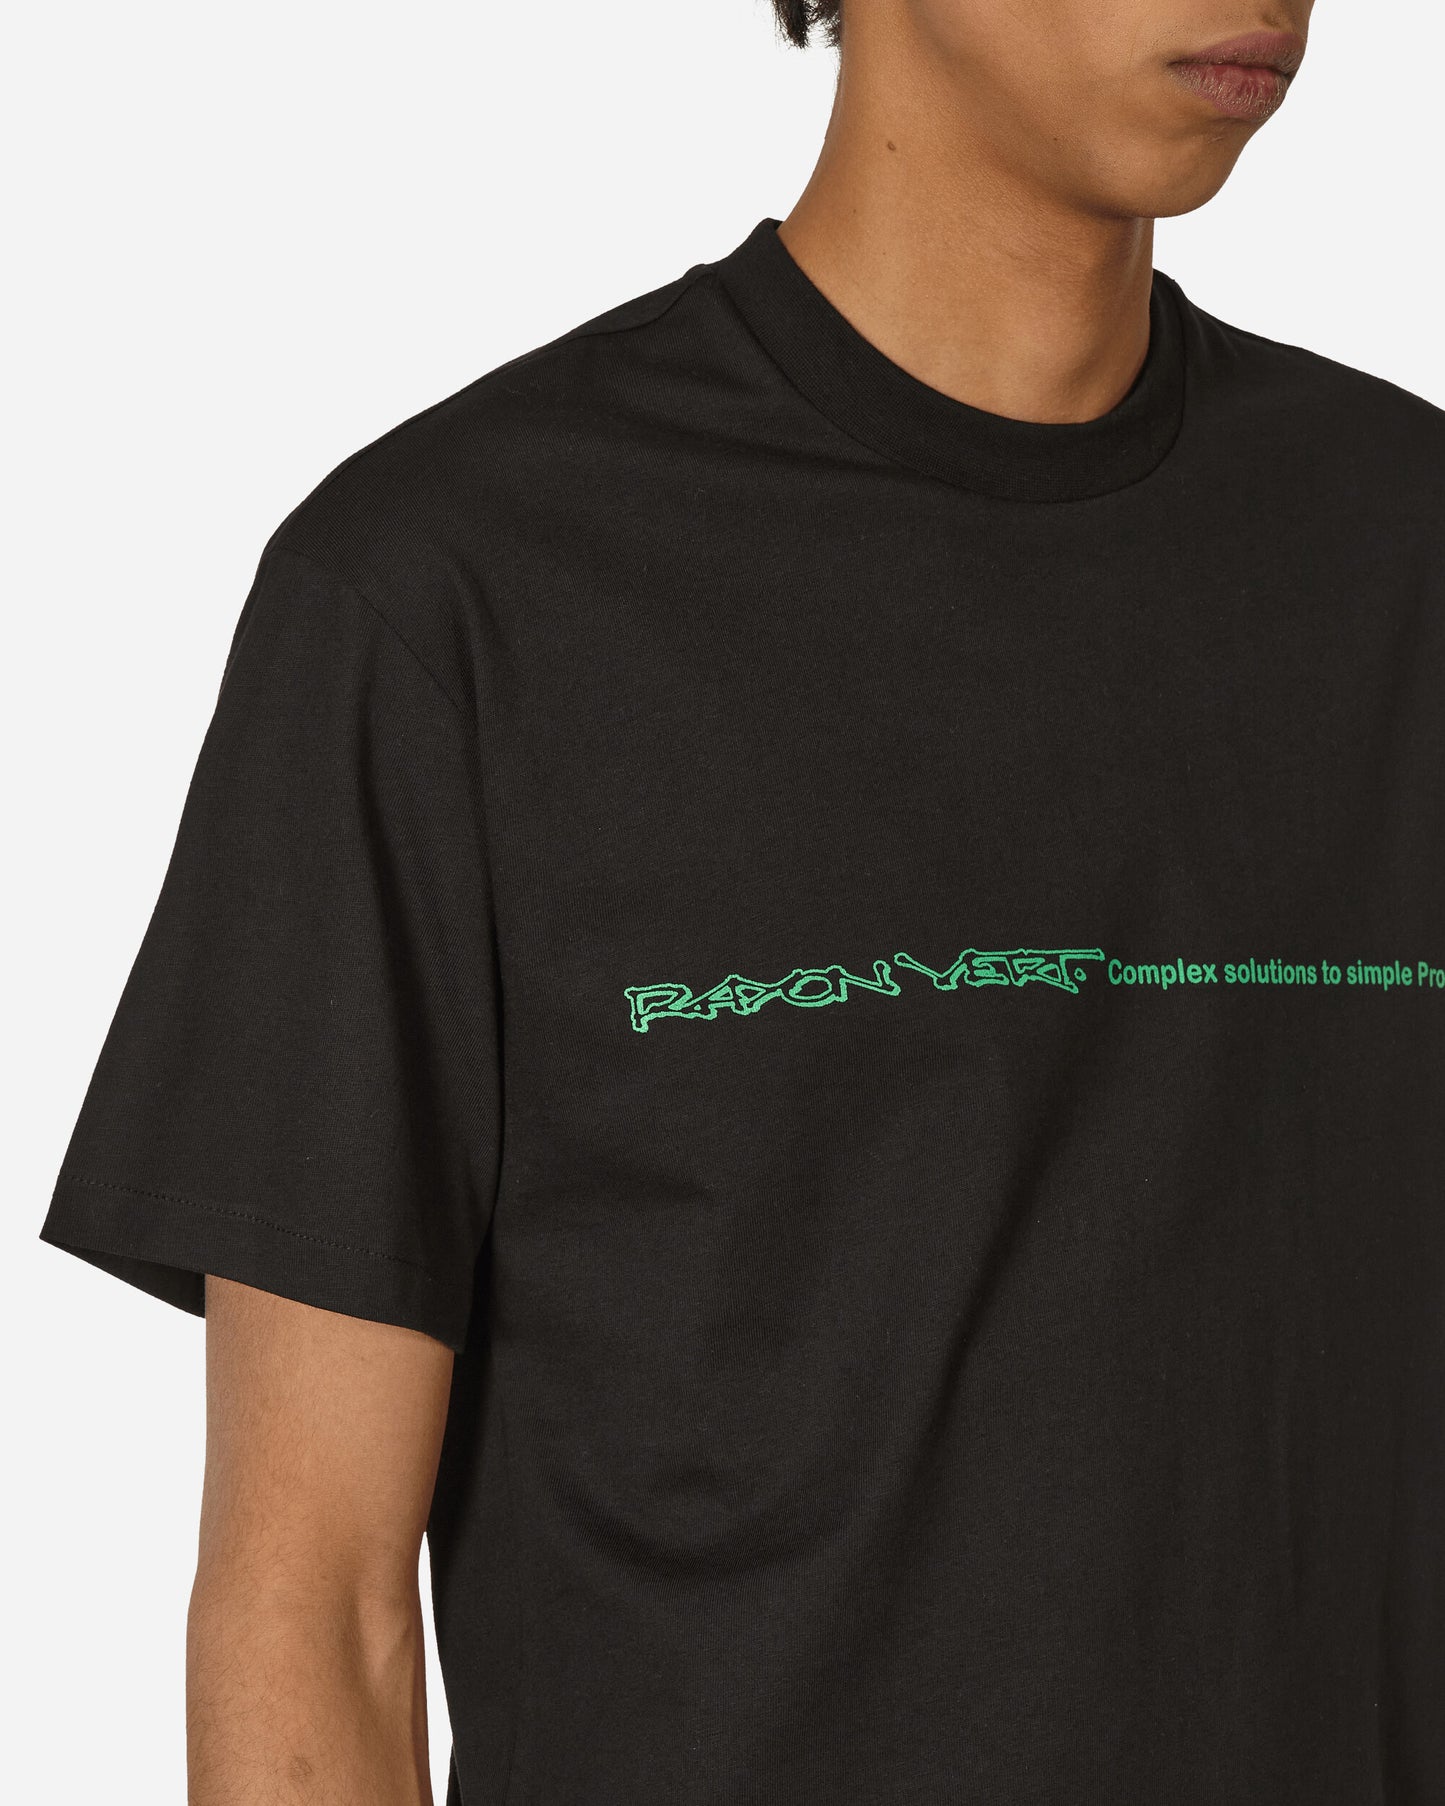 Rayon Vert Menhir T-Shirt Golgotha Black T-Shirts Shortsleeve RVS3-TS01 1